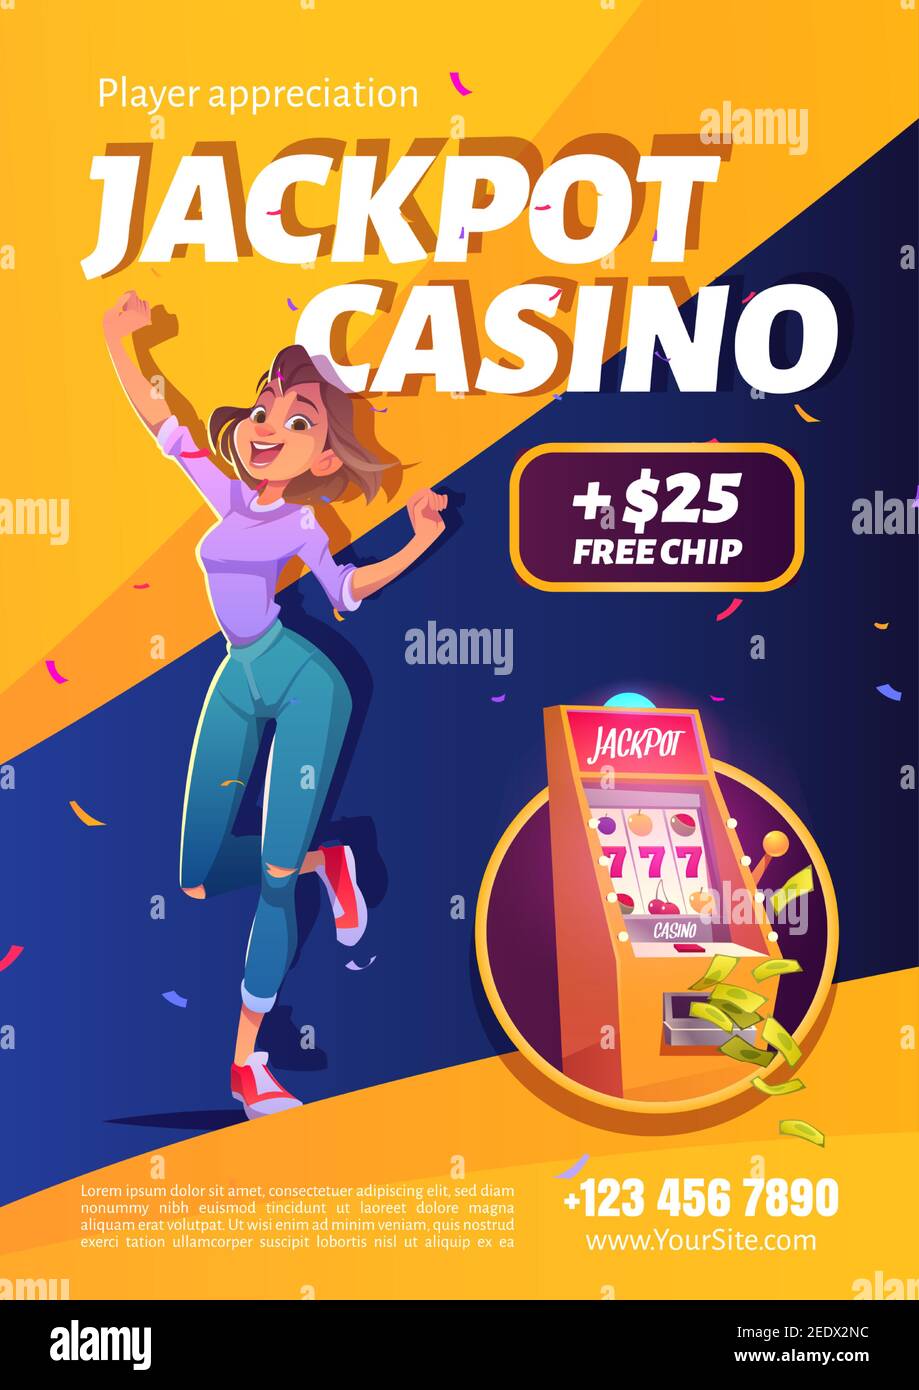 Spielautomaten Jackpot Casino gewinnen Werbeplakat. Lucky Woman feiern Gewinn Springen auf Geld fallen mit allen sieben Spin-Kombination auf einarmigen Bandit, glücklicher Gewinner. Cartoon Vektorgrafik Stock Vektor